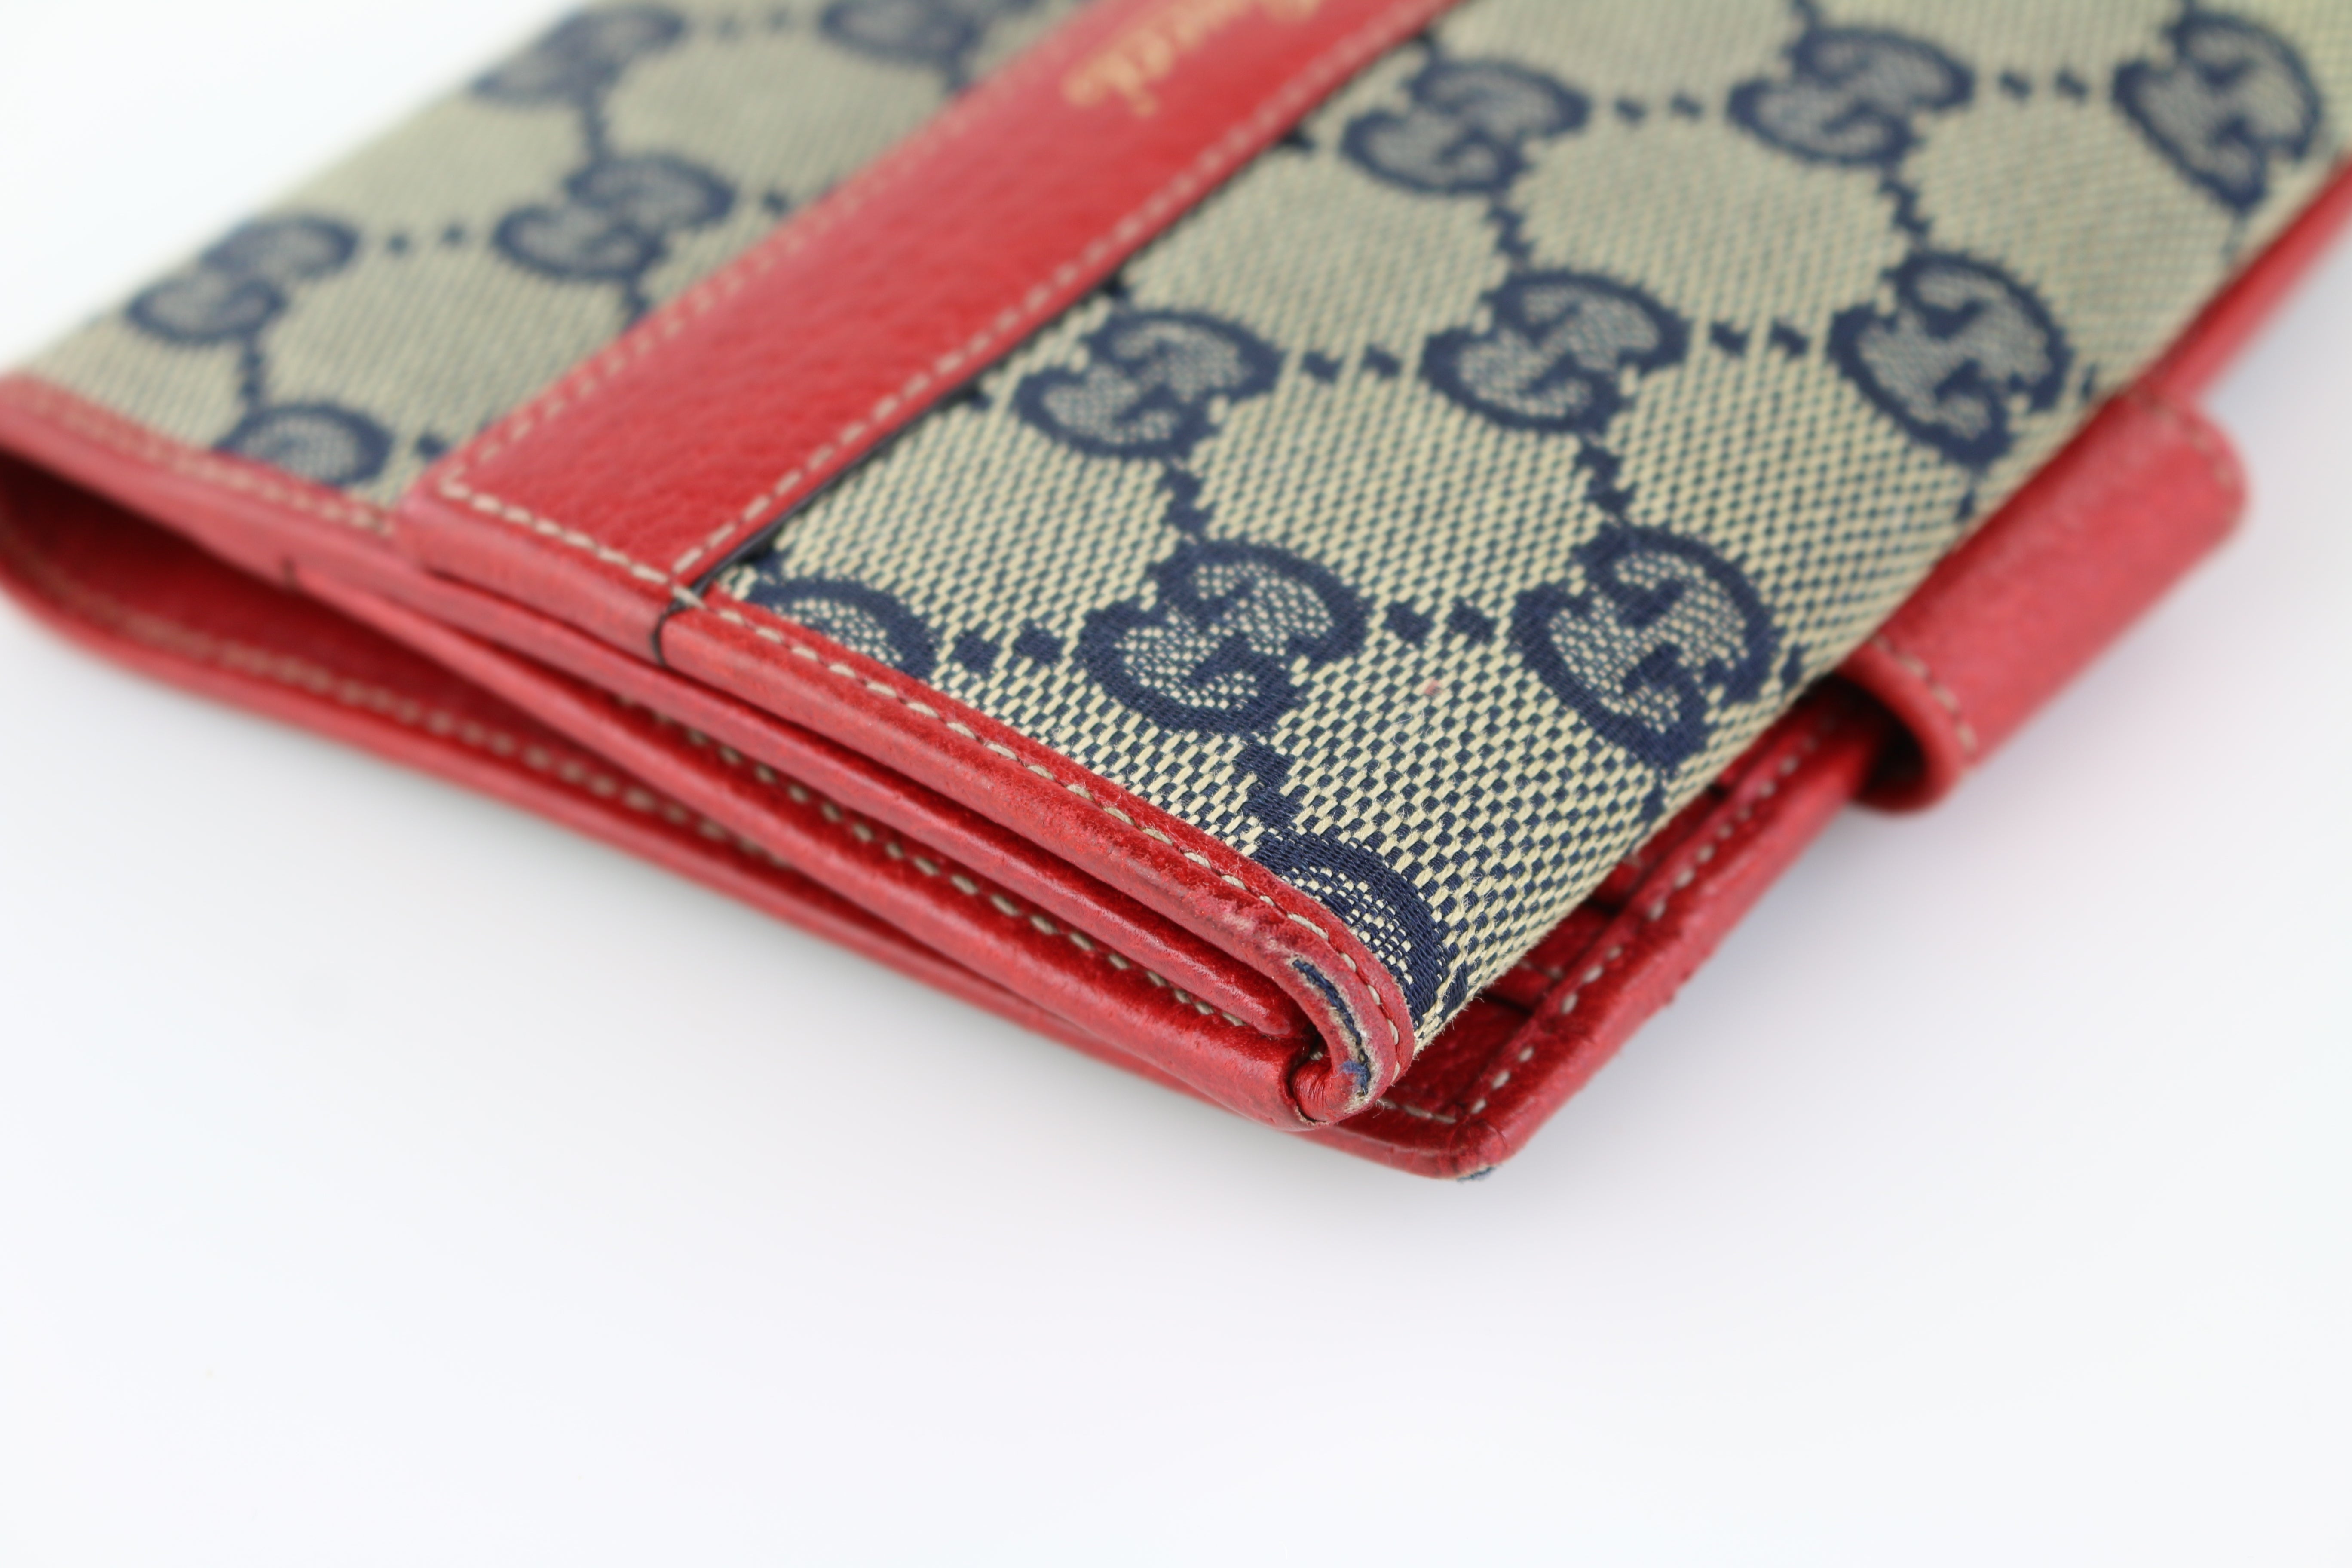 2017 Hot Supreme Wallet Handbag Red Black Top Quality Limited